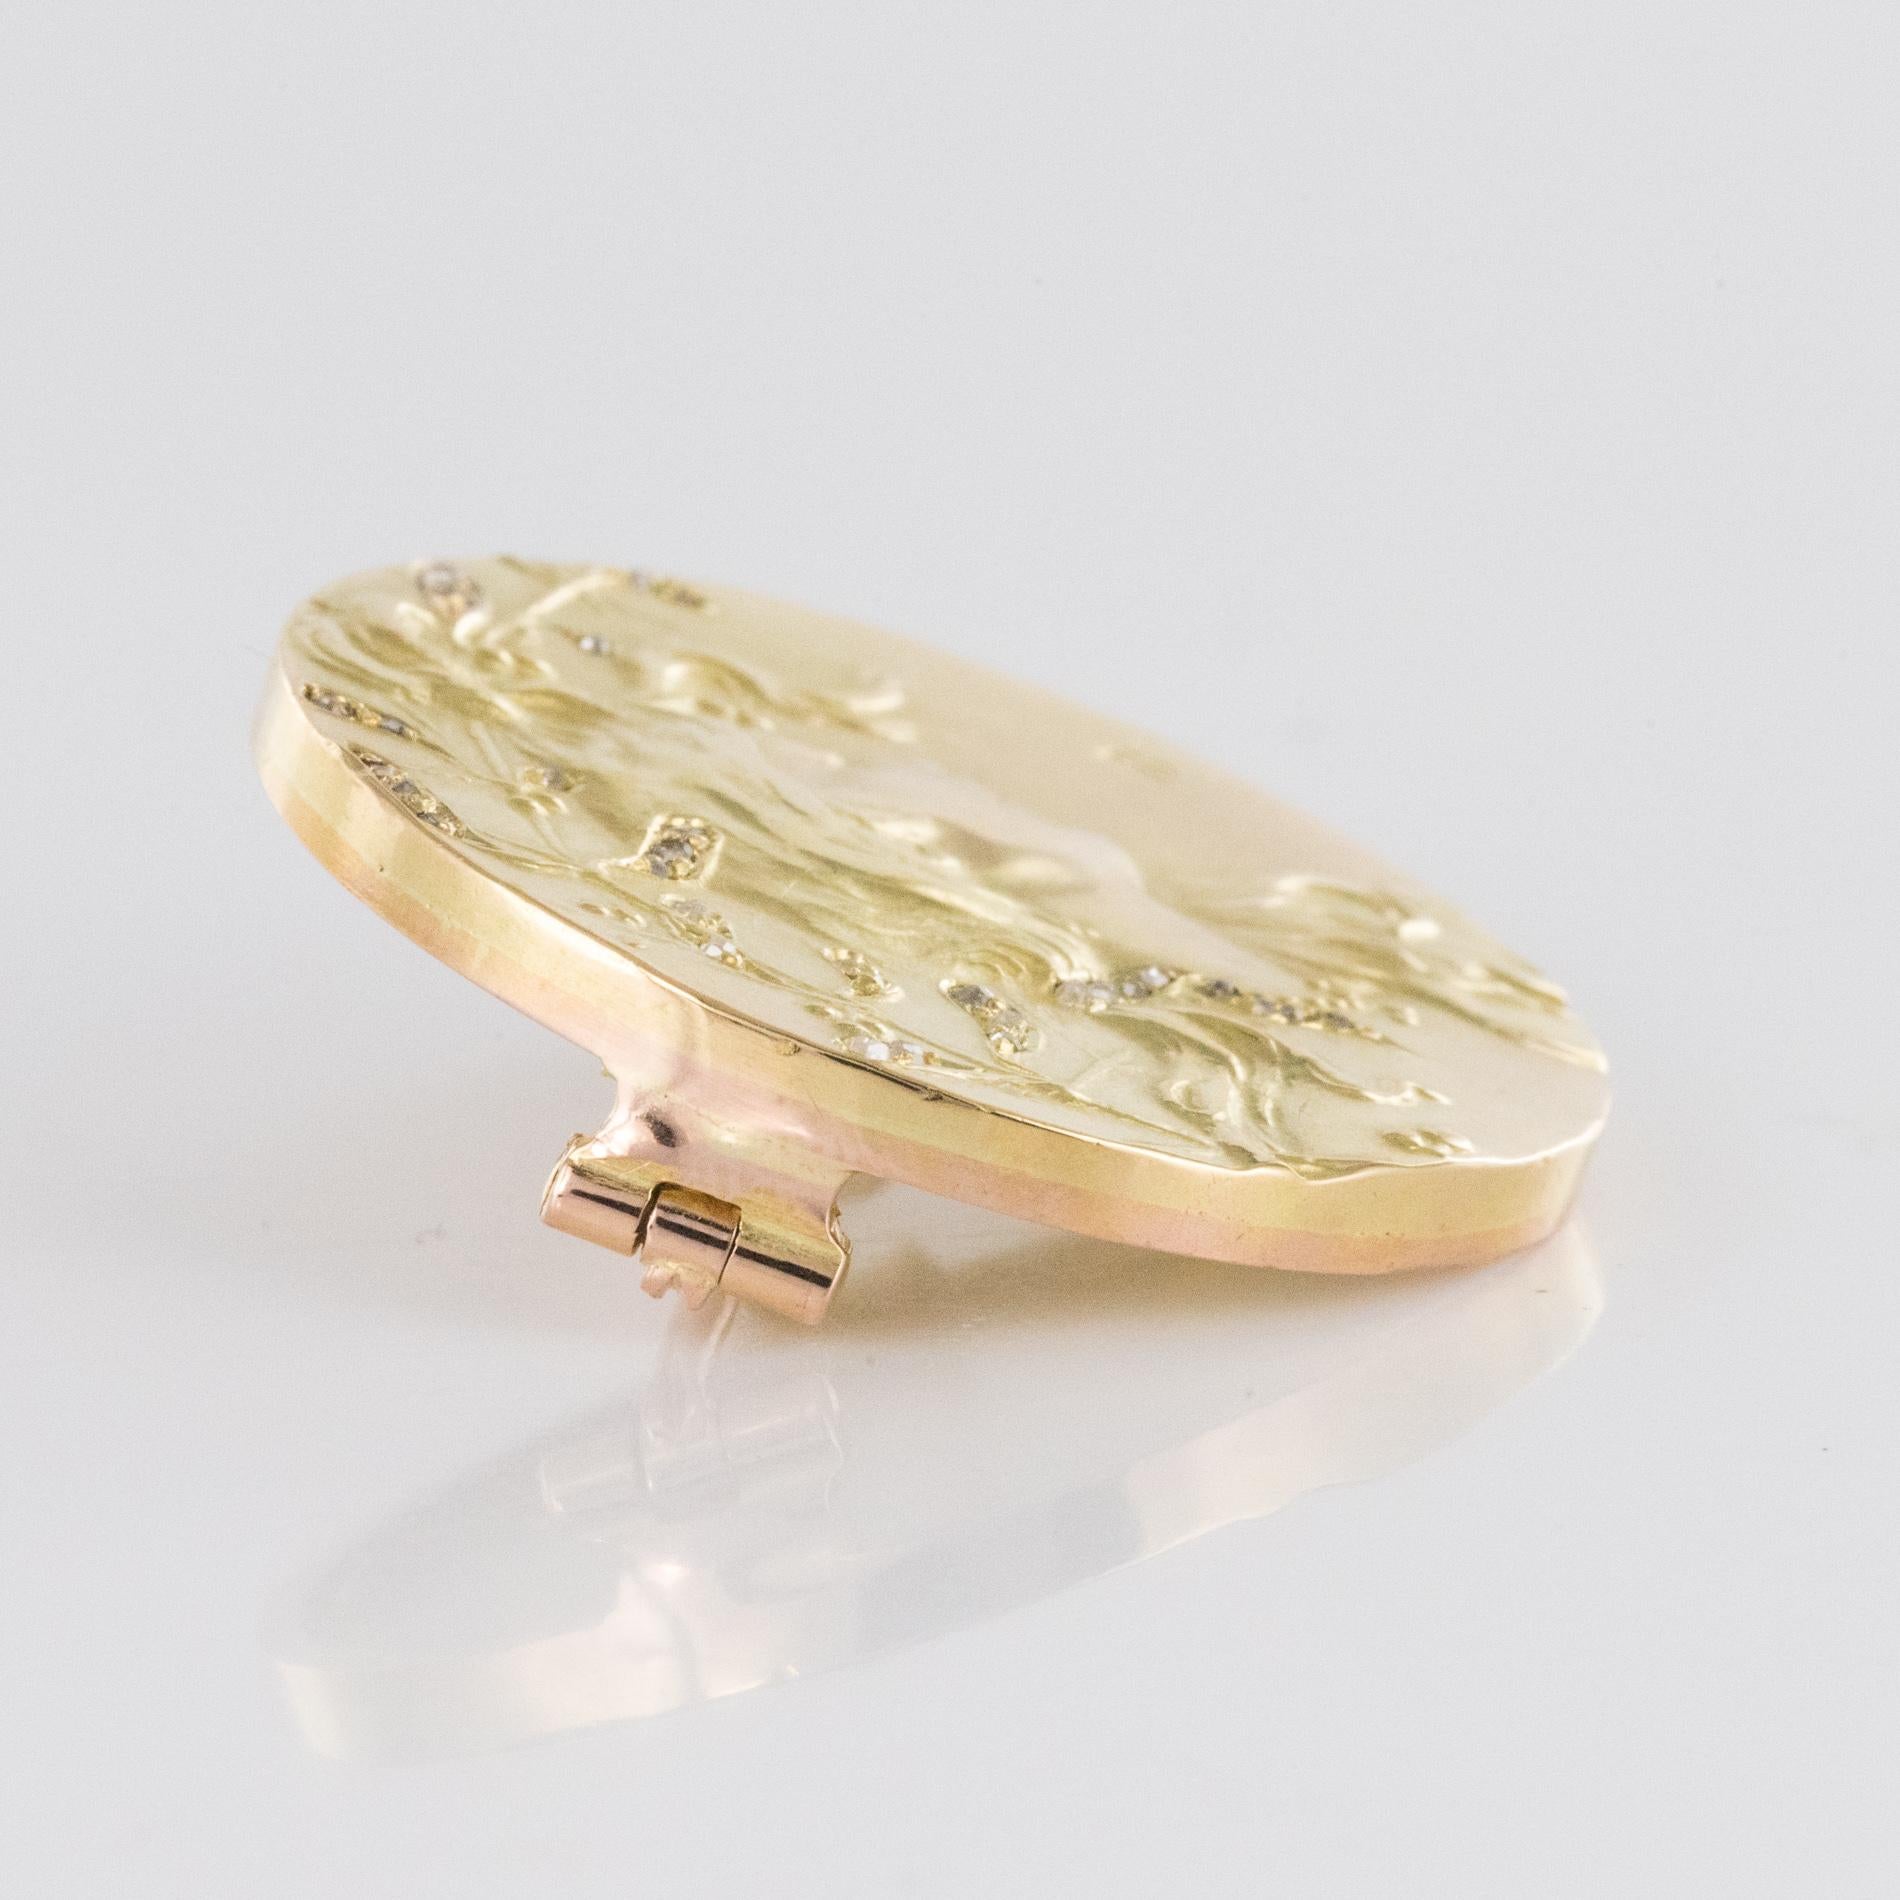 French Becker Art Nouveau Rose-Cut Diamond 18 Karat Yellow Gold Brooch For Sale 4